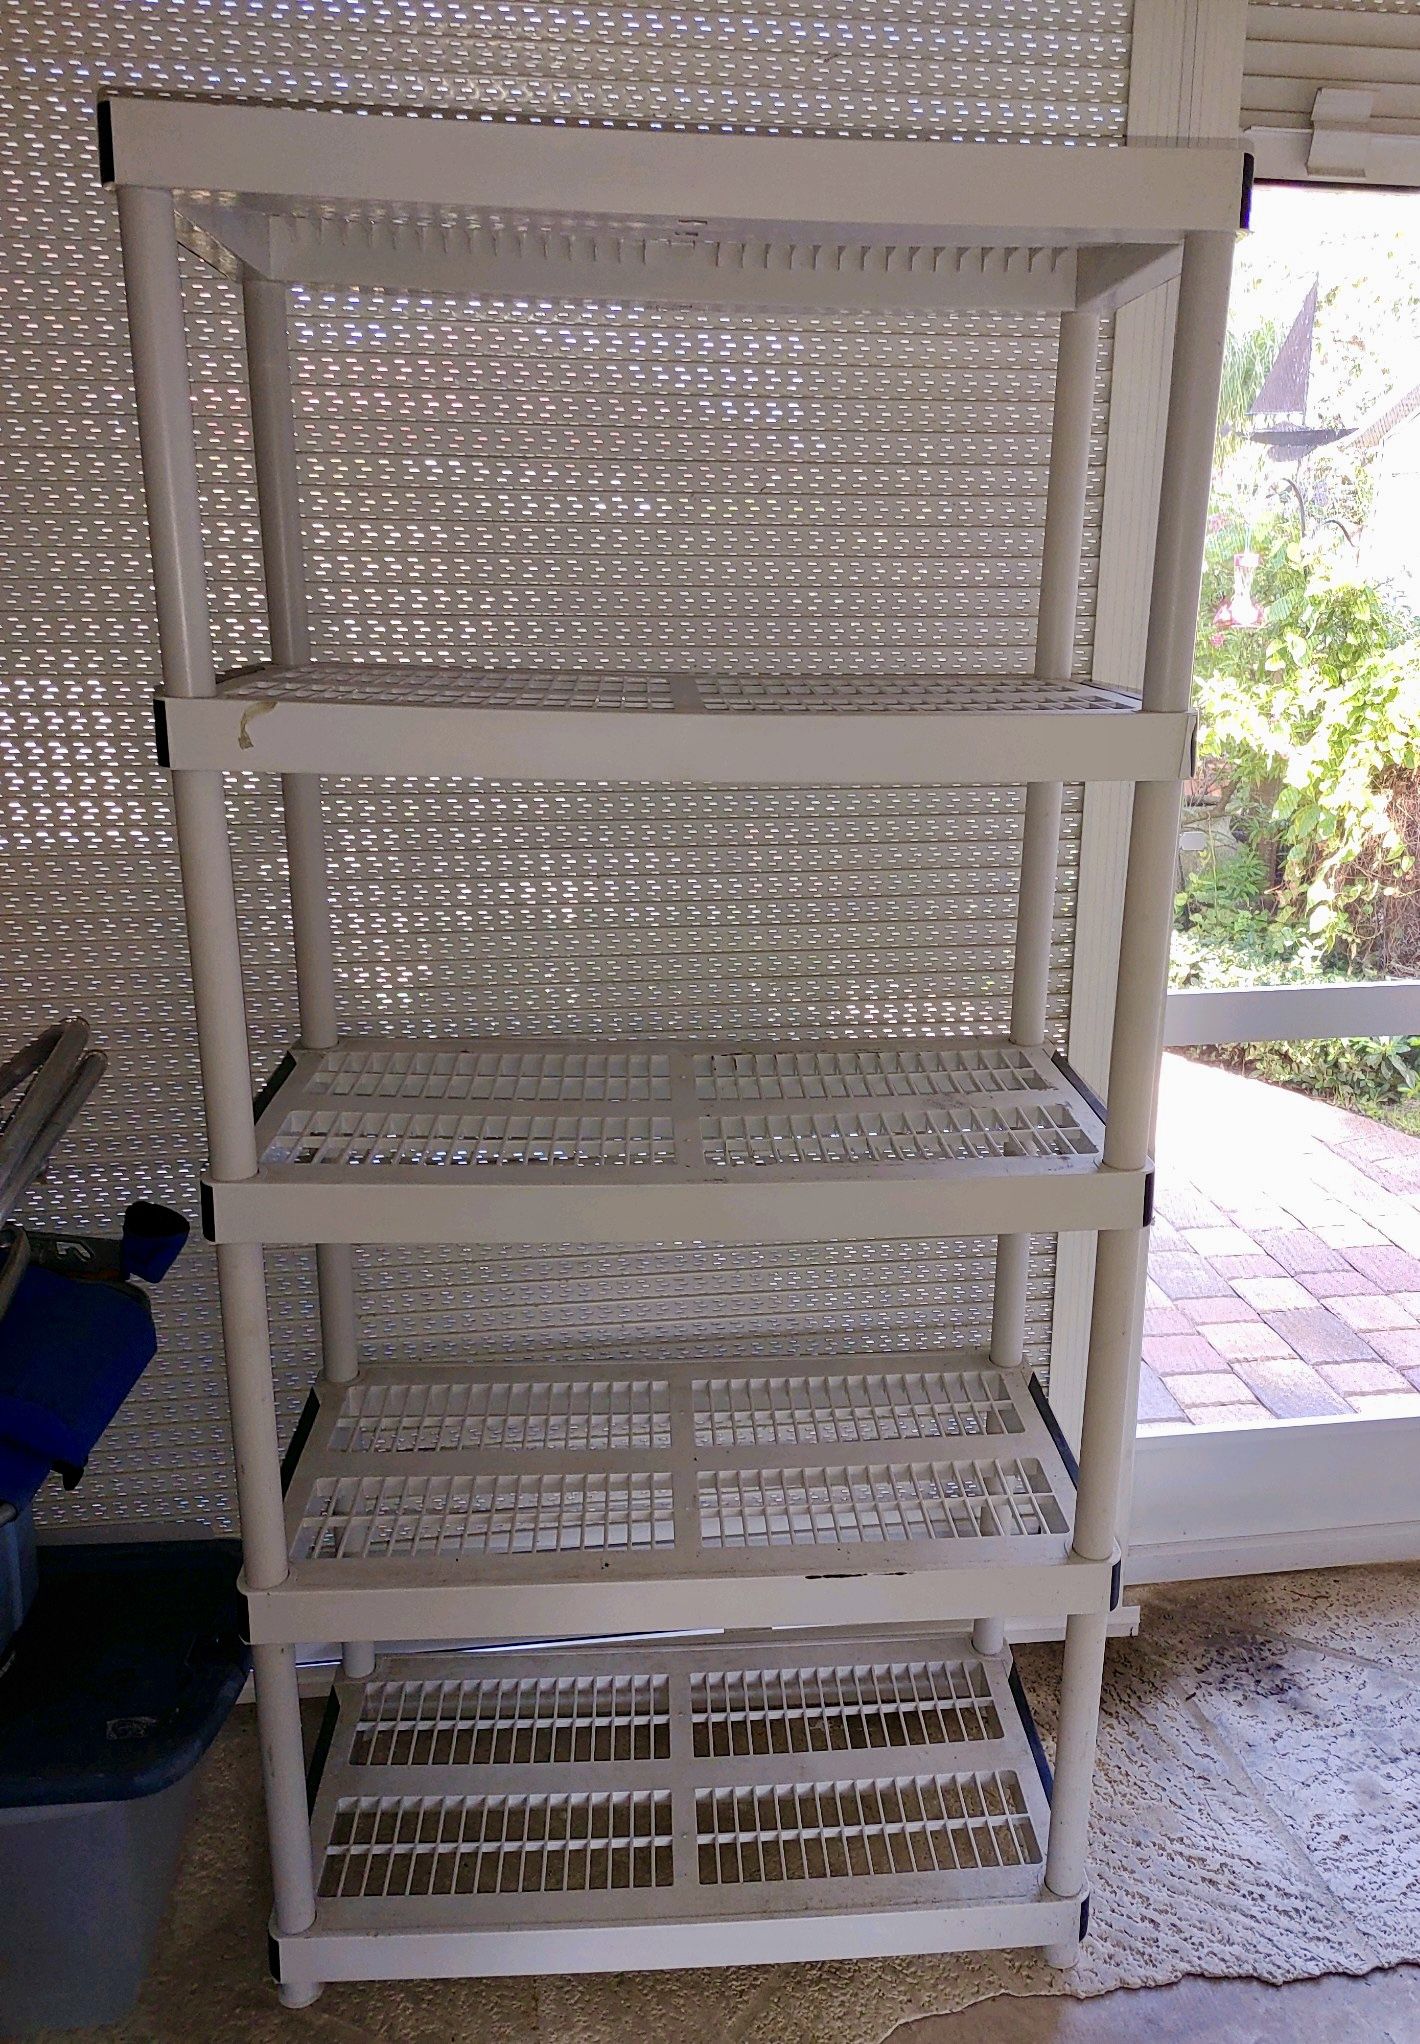 Preowned plastic shelving rack garage shelf